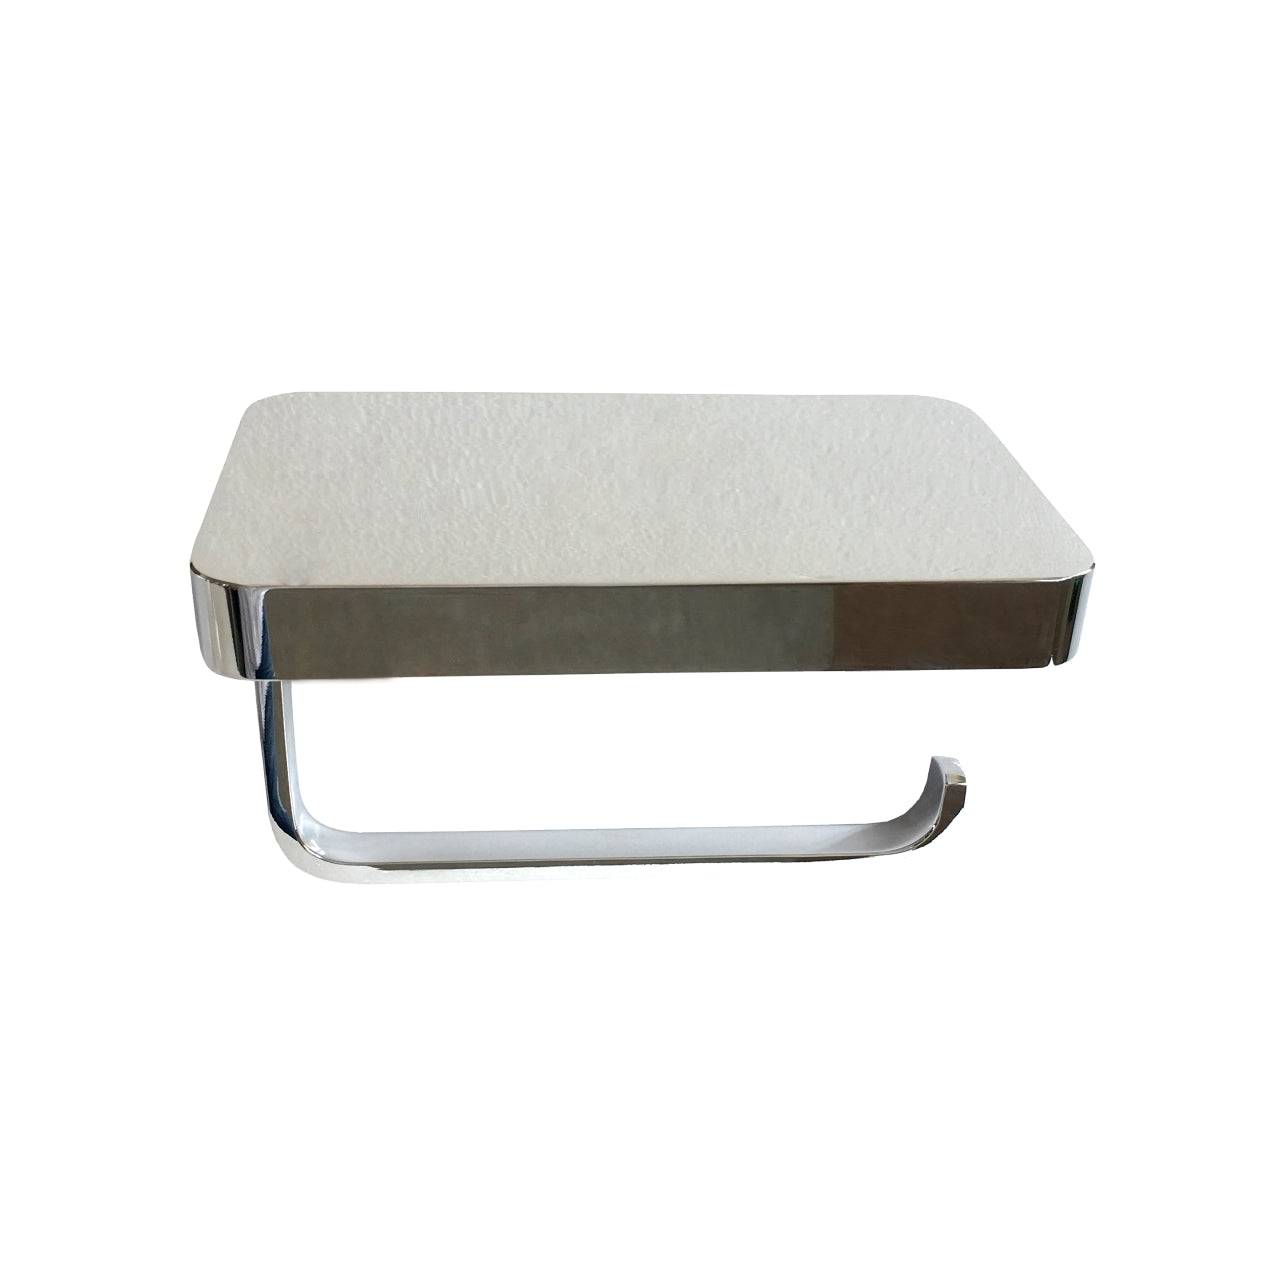 Kube Bath Aqua Plato Toilet Paper Holder With Shelf – Chrome - Renoz